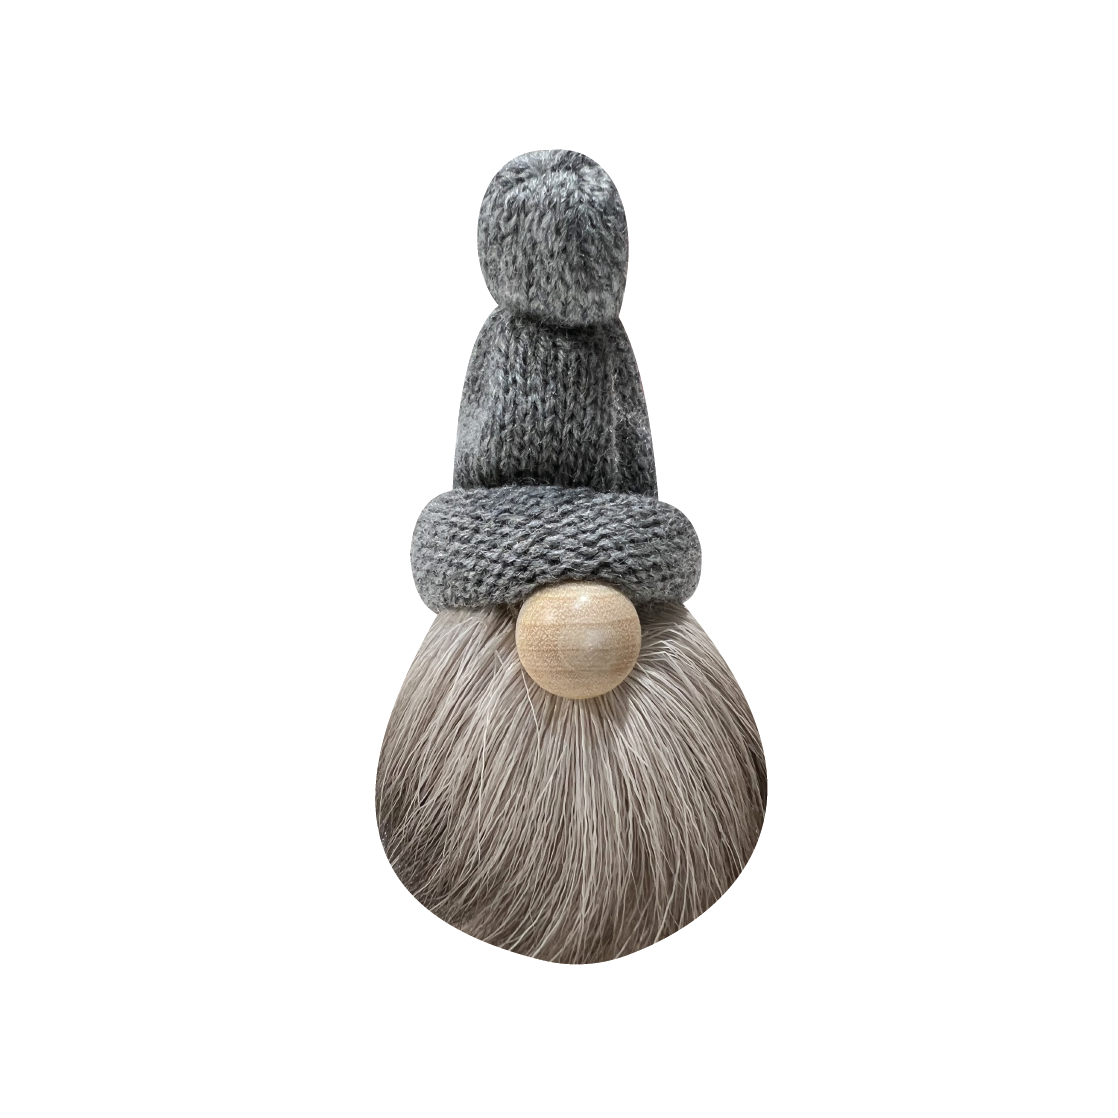 Tomte - Reindeer Beard & Knit Hat, 3" tall